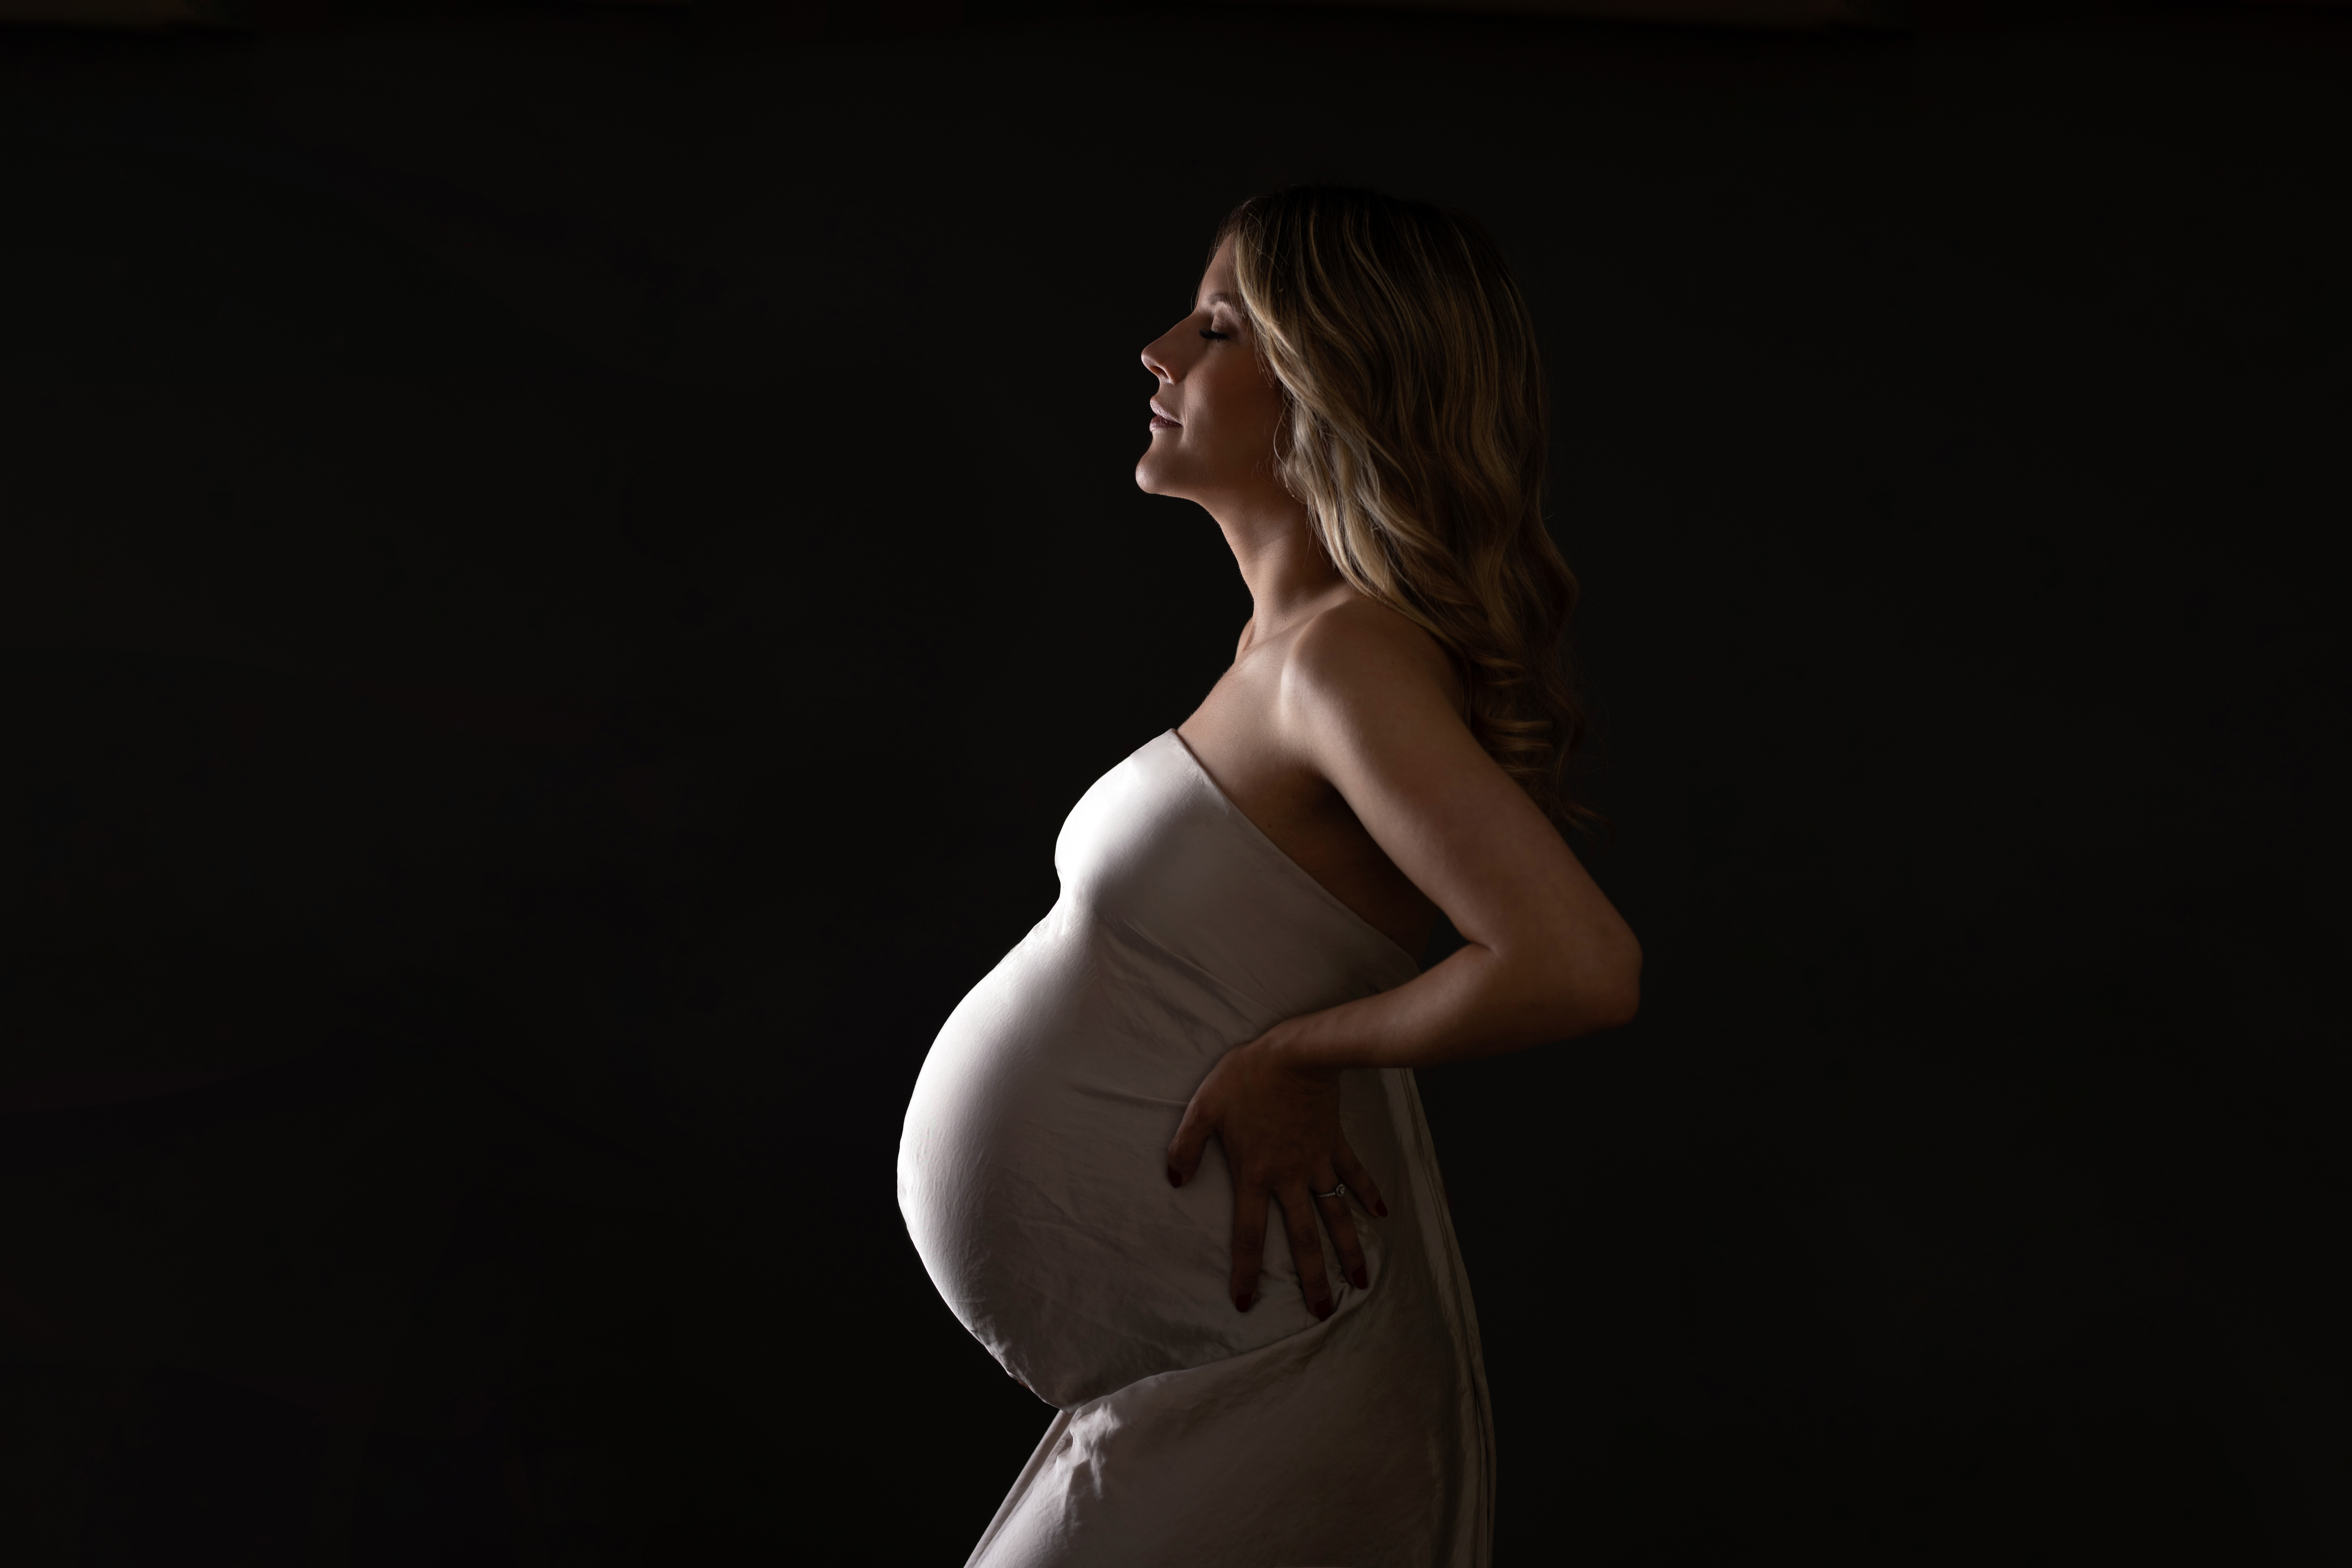 Photographie de femme enceinte en studio à Rosny sous bois Photographe de studio maternité naissance nouveau-né bébé grossesse val de marne seine saint denis